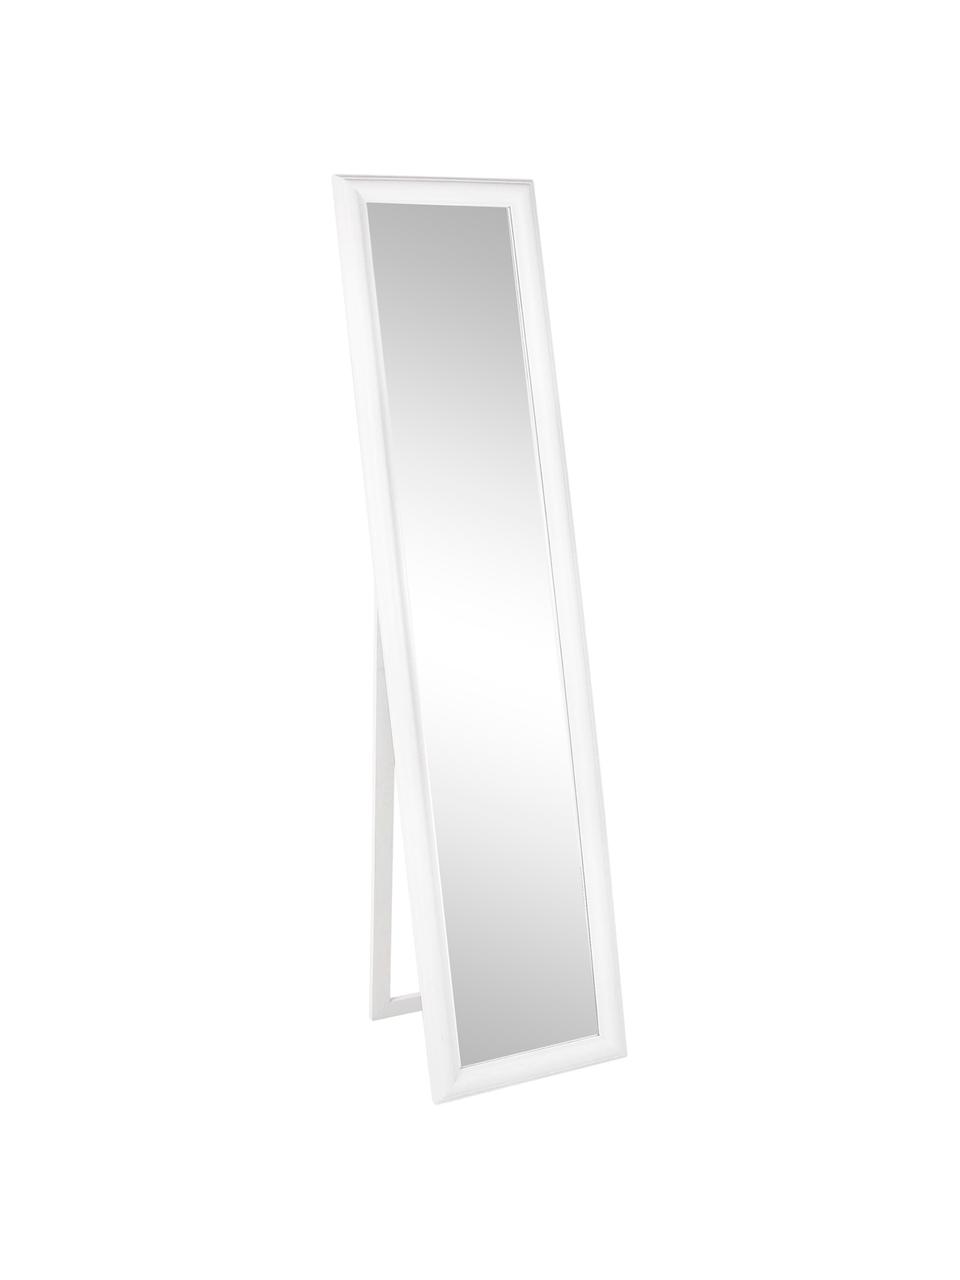 Eckiger Standspiegel Sanzio mit weissem Paulowniaholzrahmen, Rahmen: Paulowniaholz, beschichte, Spiegelfläche: Spiegelglas, Weiss, B 40 x H 170 cm